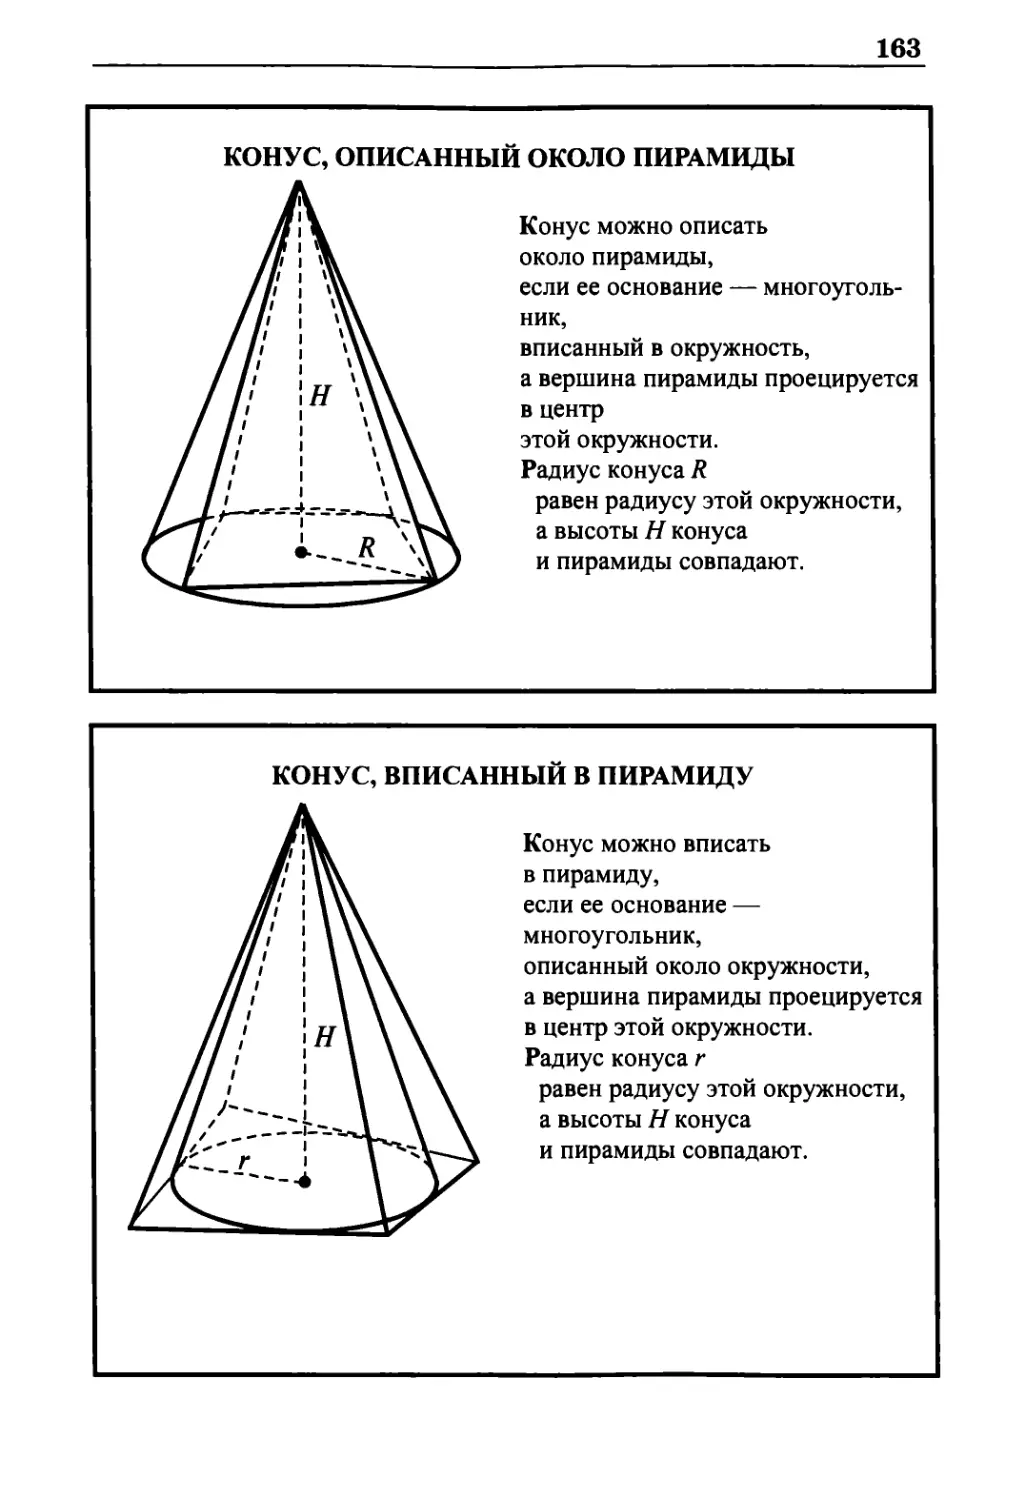 Конус, описанный около пирамиды
Конус, вписанный в пирамиду